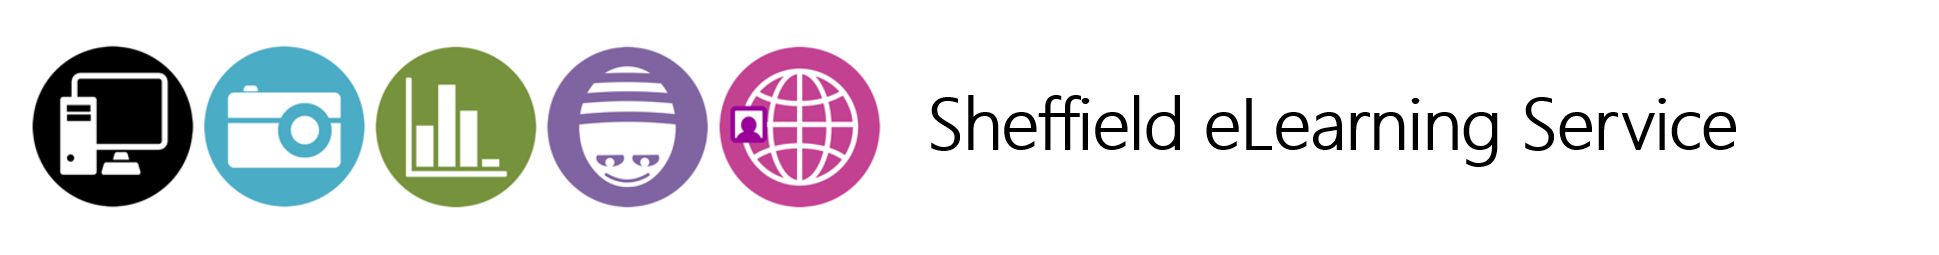 Sheffield eLearning Service